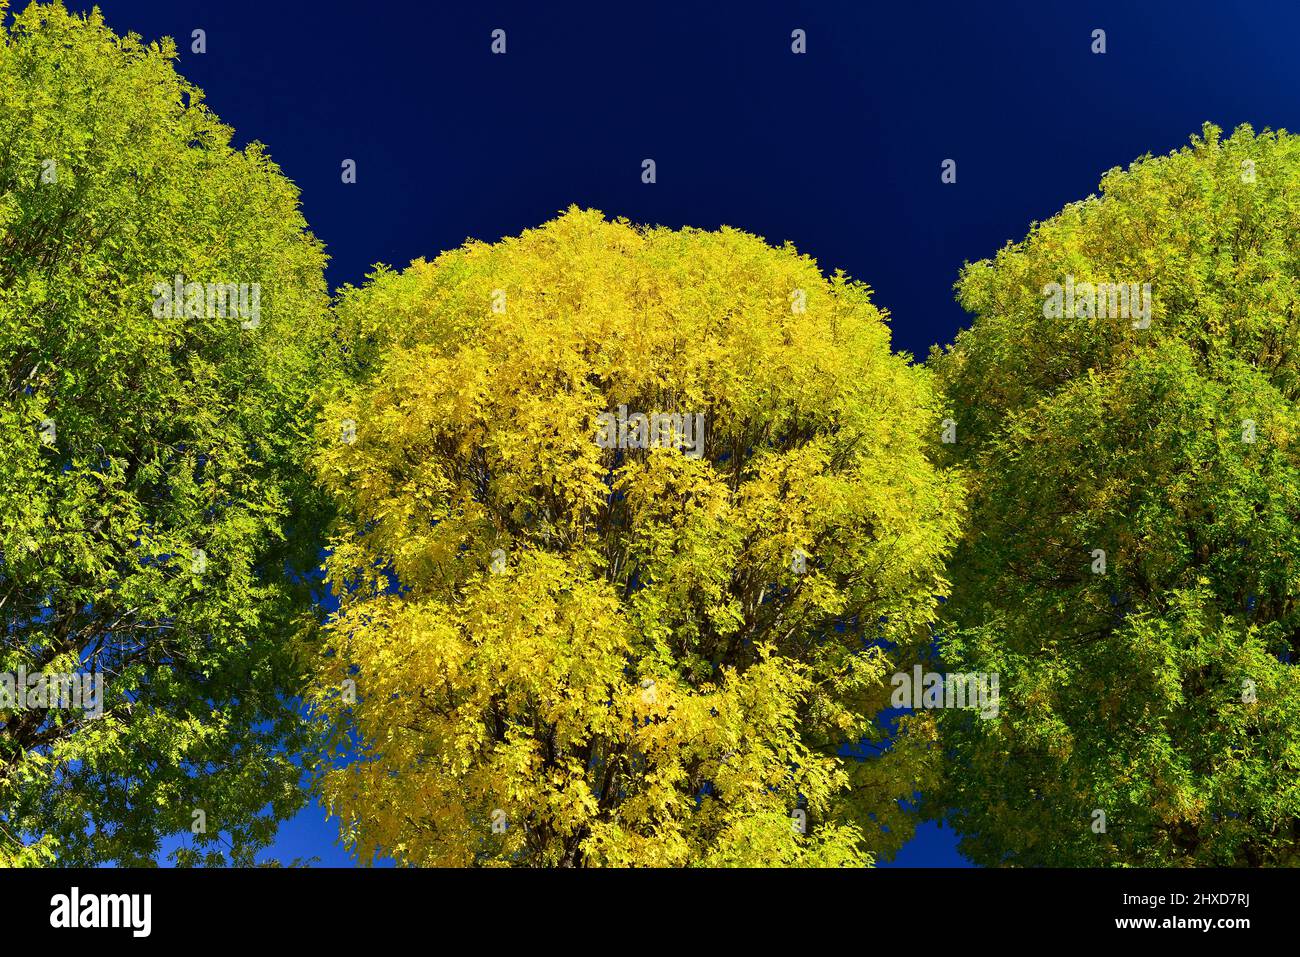 Árboles con intenso follaje colorido y brillante, Feurs, Francia Foto de stock